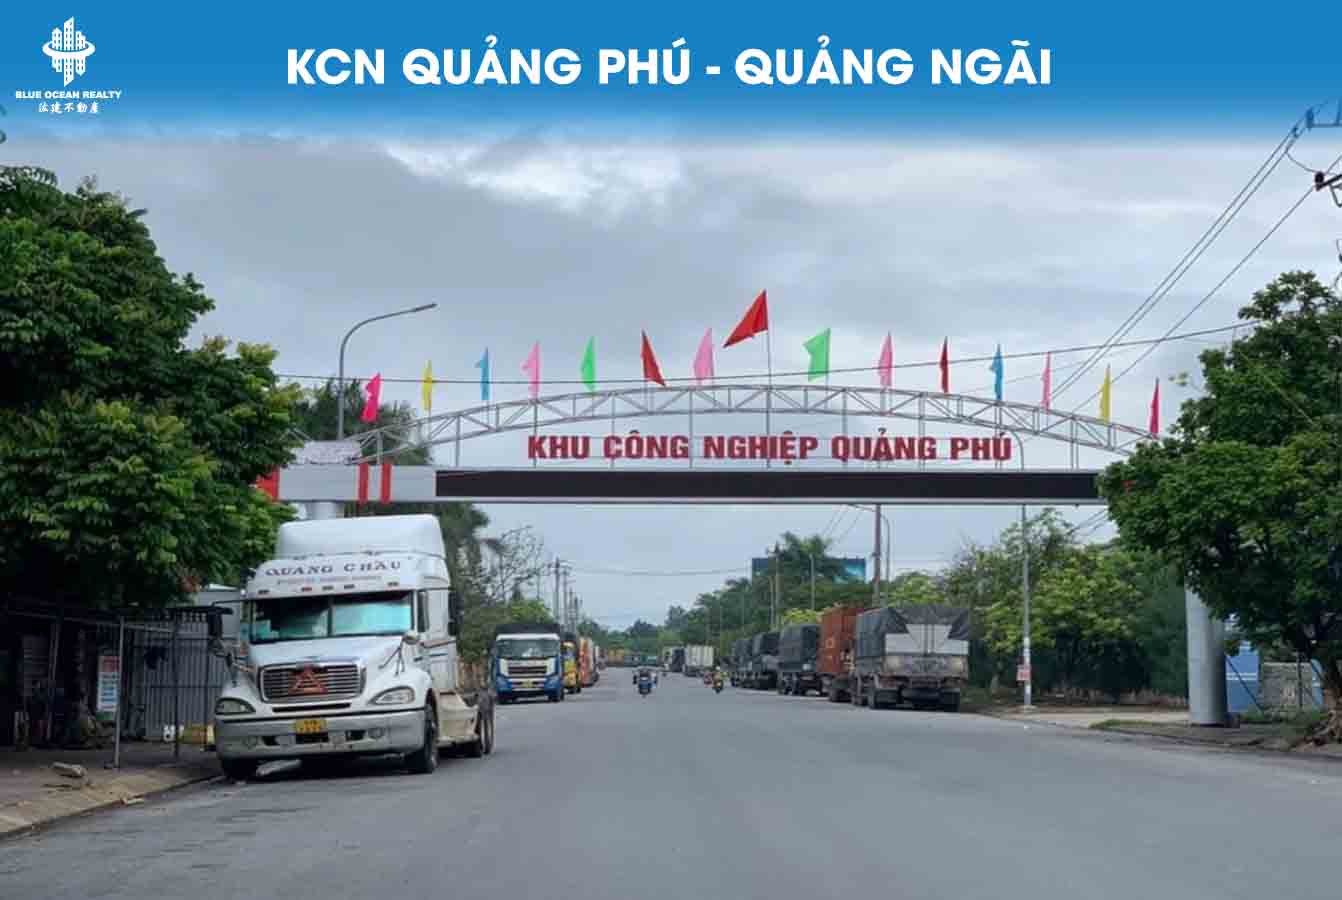 Khu Công nghiệp Quảng Phú tỉnh Quảng Ngãi